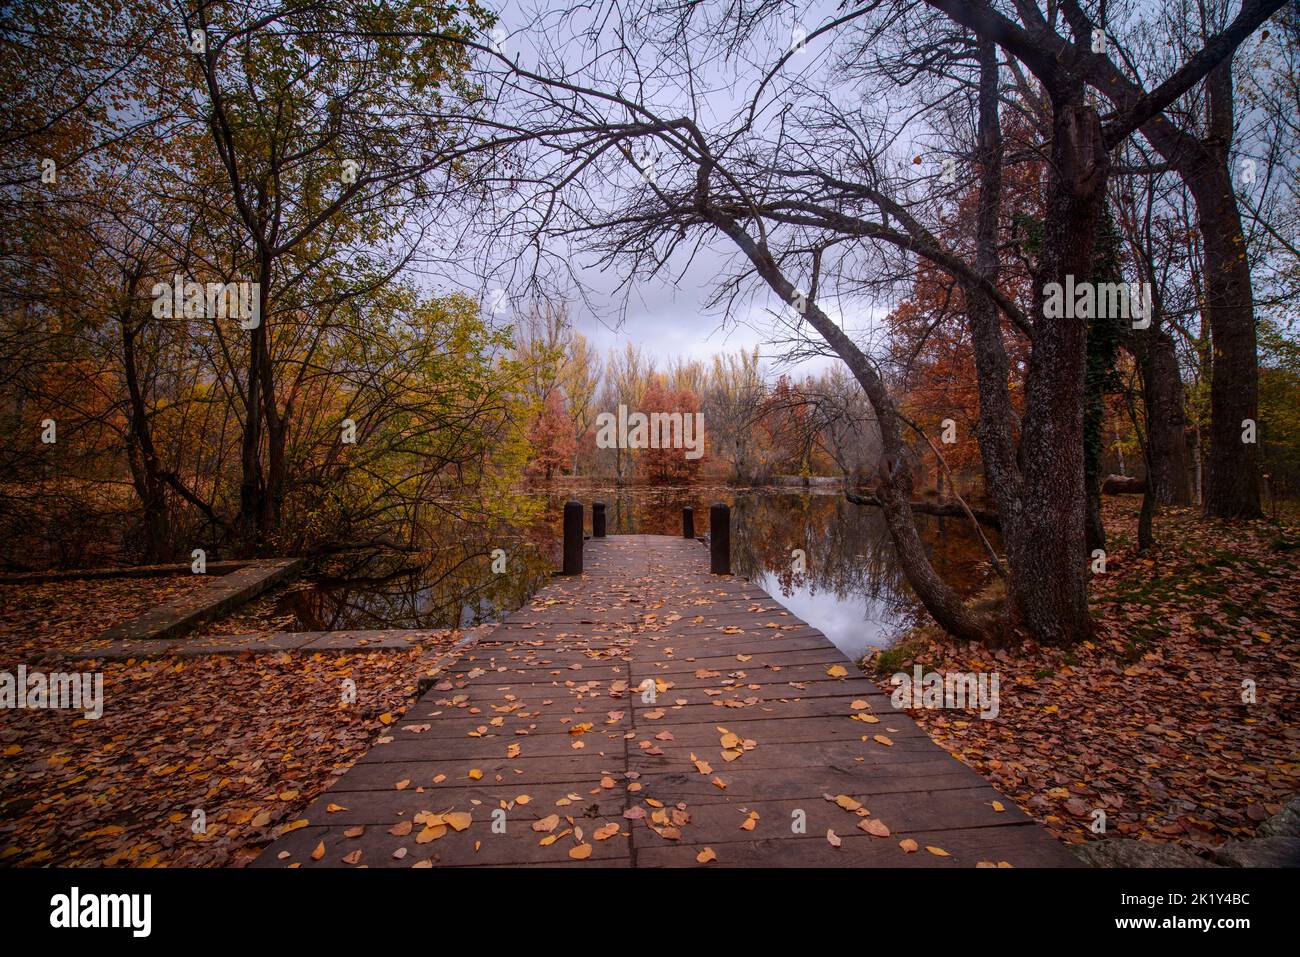 Vue horizontale d'un quai en bois recouvert de feuilles orangées, entouré d'arbres effrayants qui se reflètent sur un lac en automne Banque D'Images